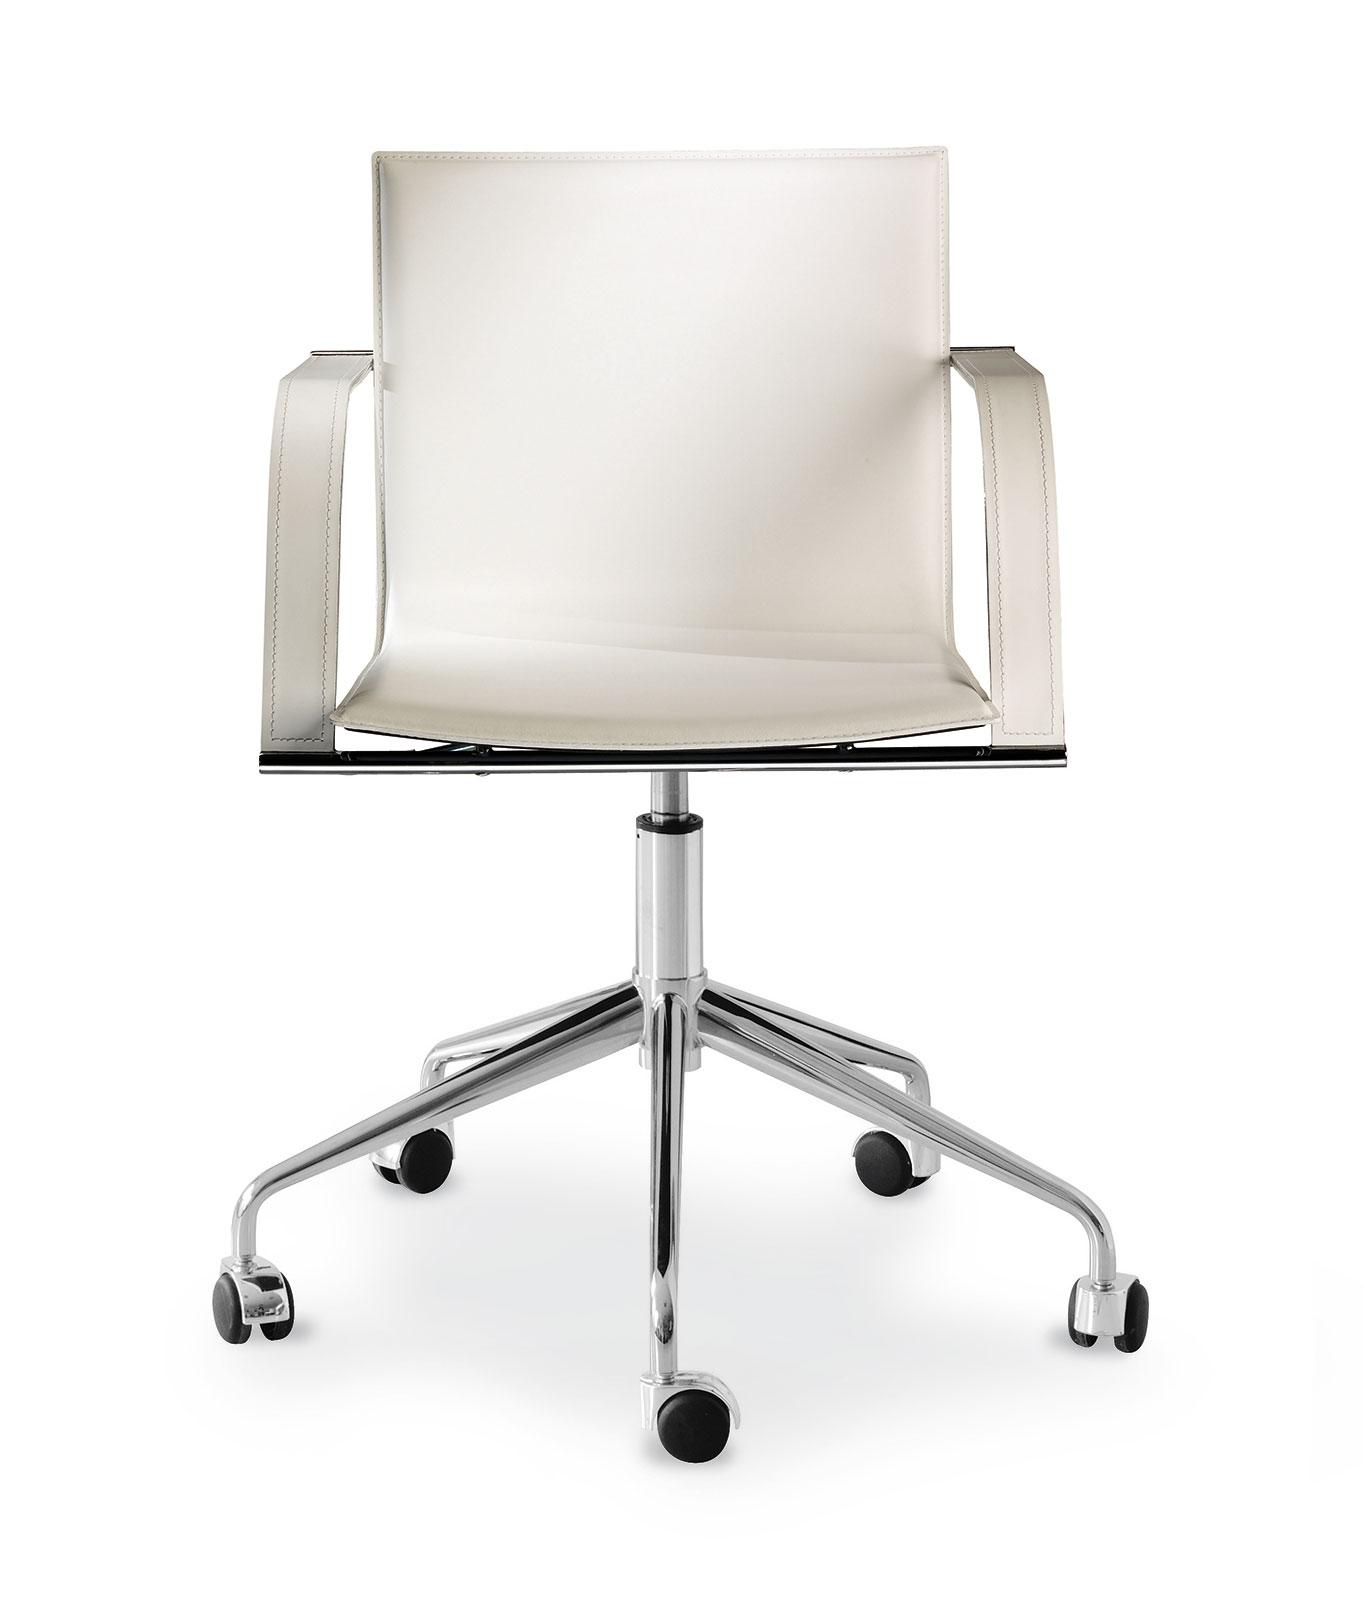 Malena sedia con braccioli italy dream design for Vendita sedie ufficio